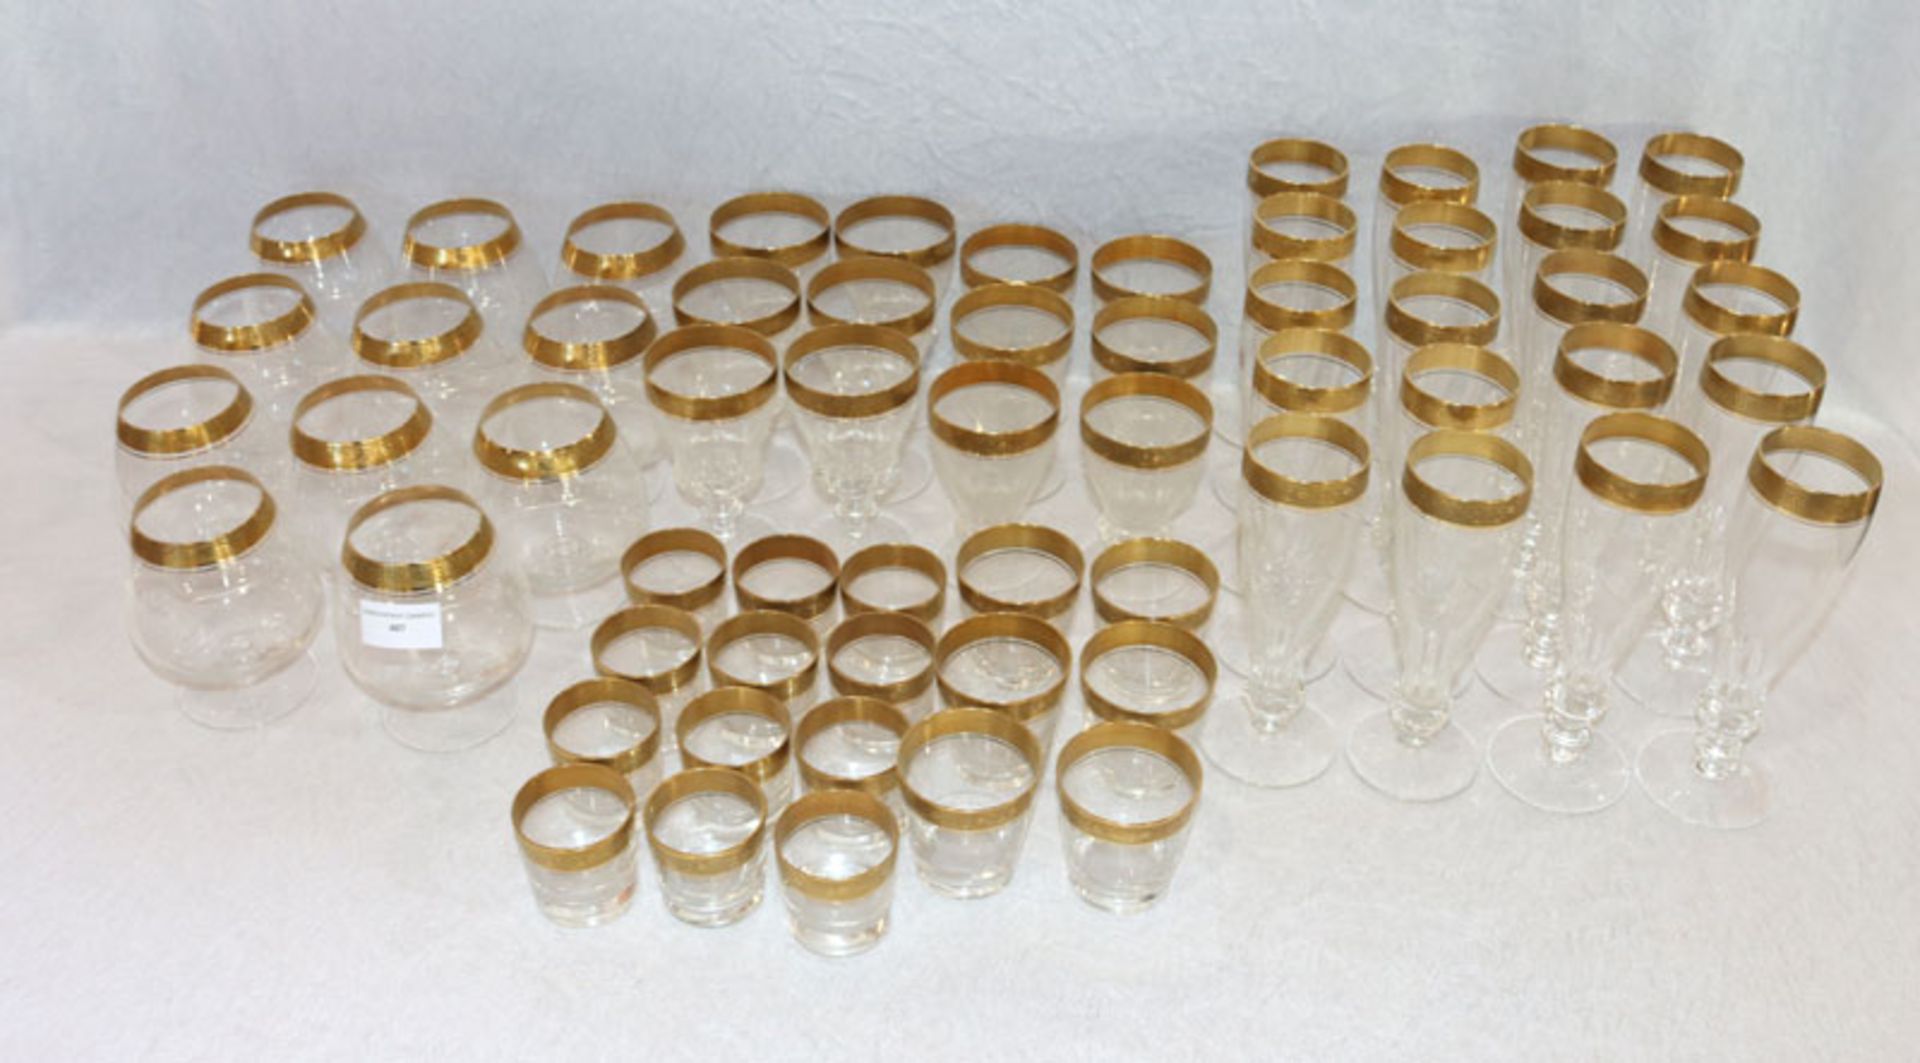 Trinkglas-Konvolut mit Goldrand: 10 Sektflöten, H 18,5 cm, 10 Sektflöten, H 17 cm, 12 Weingläser